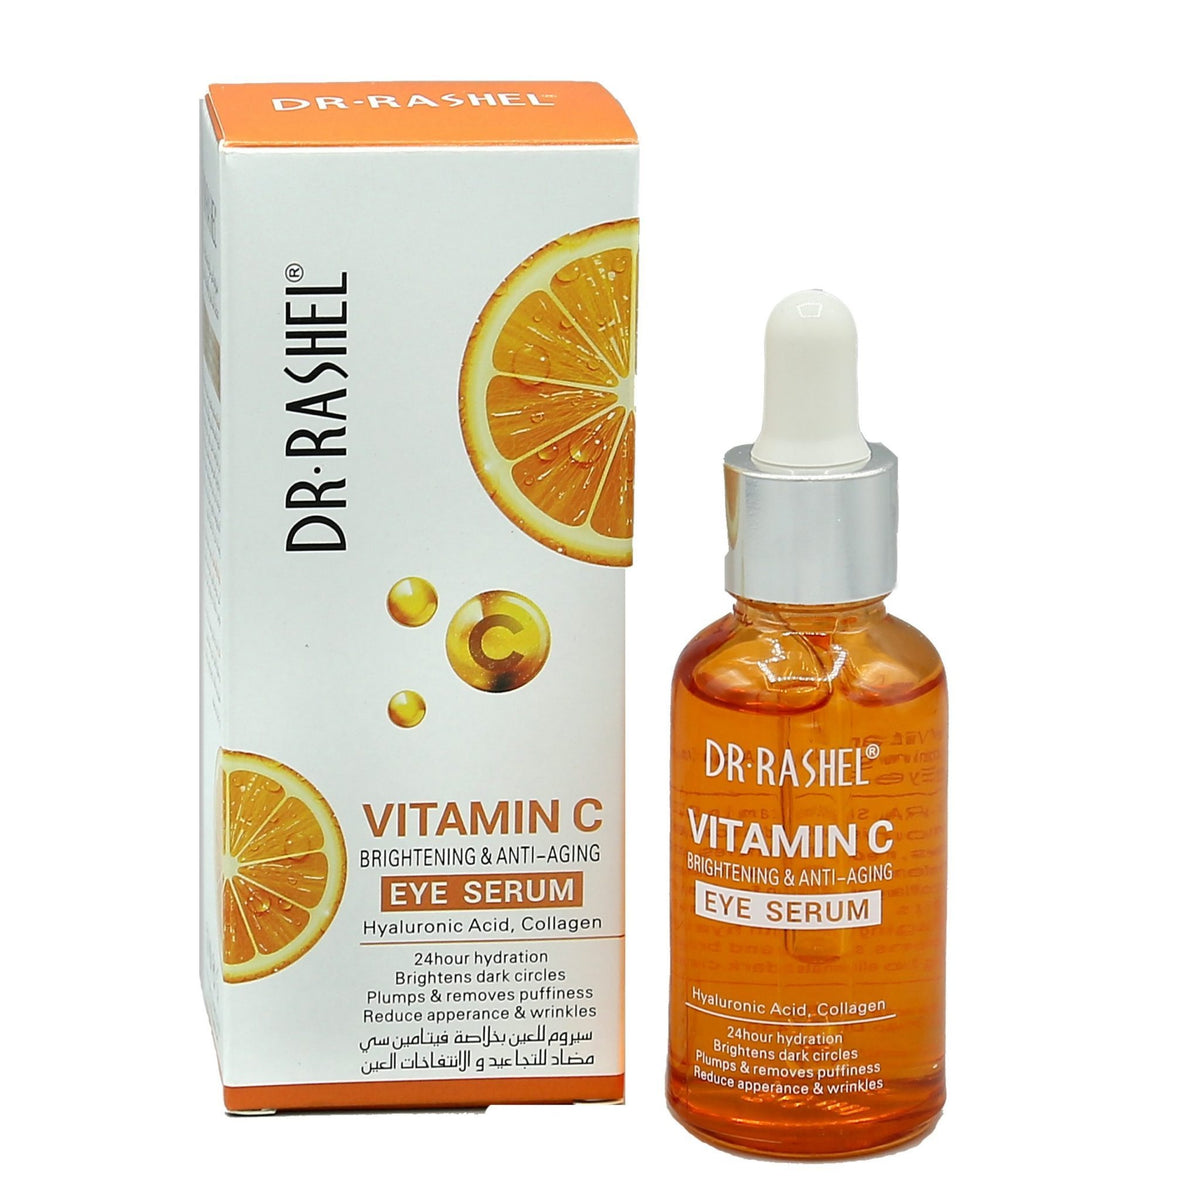 Dr Rashel Vitamin C Eye Serum Brightening &amp; Anti Aging 30ml freeshipping - lasertag.pk